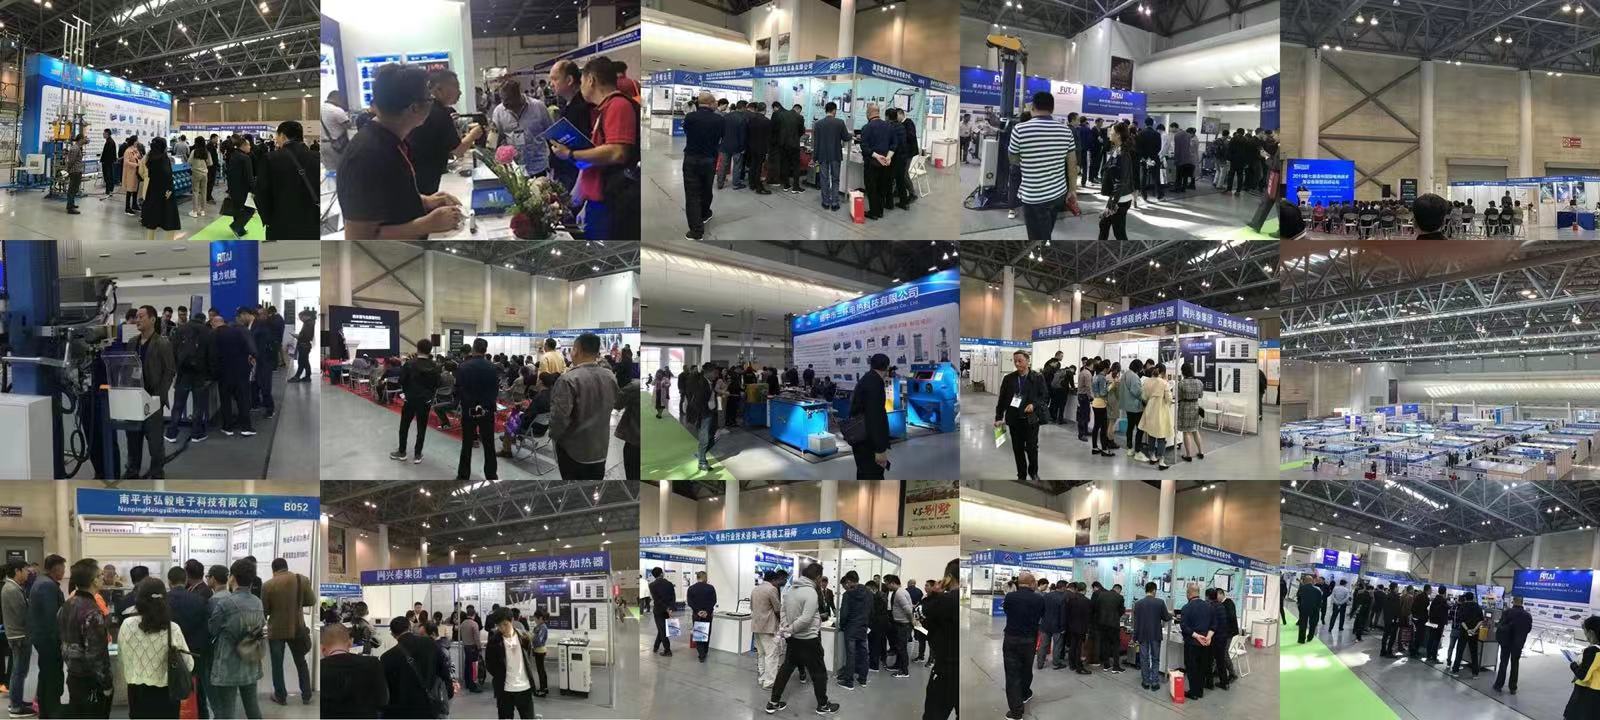 2022CBEC第二届中国跨境电商及新电商交易博览会